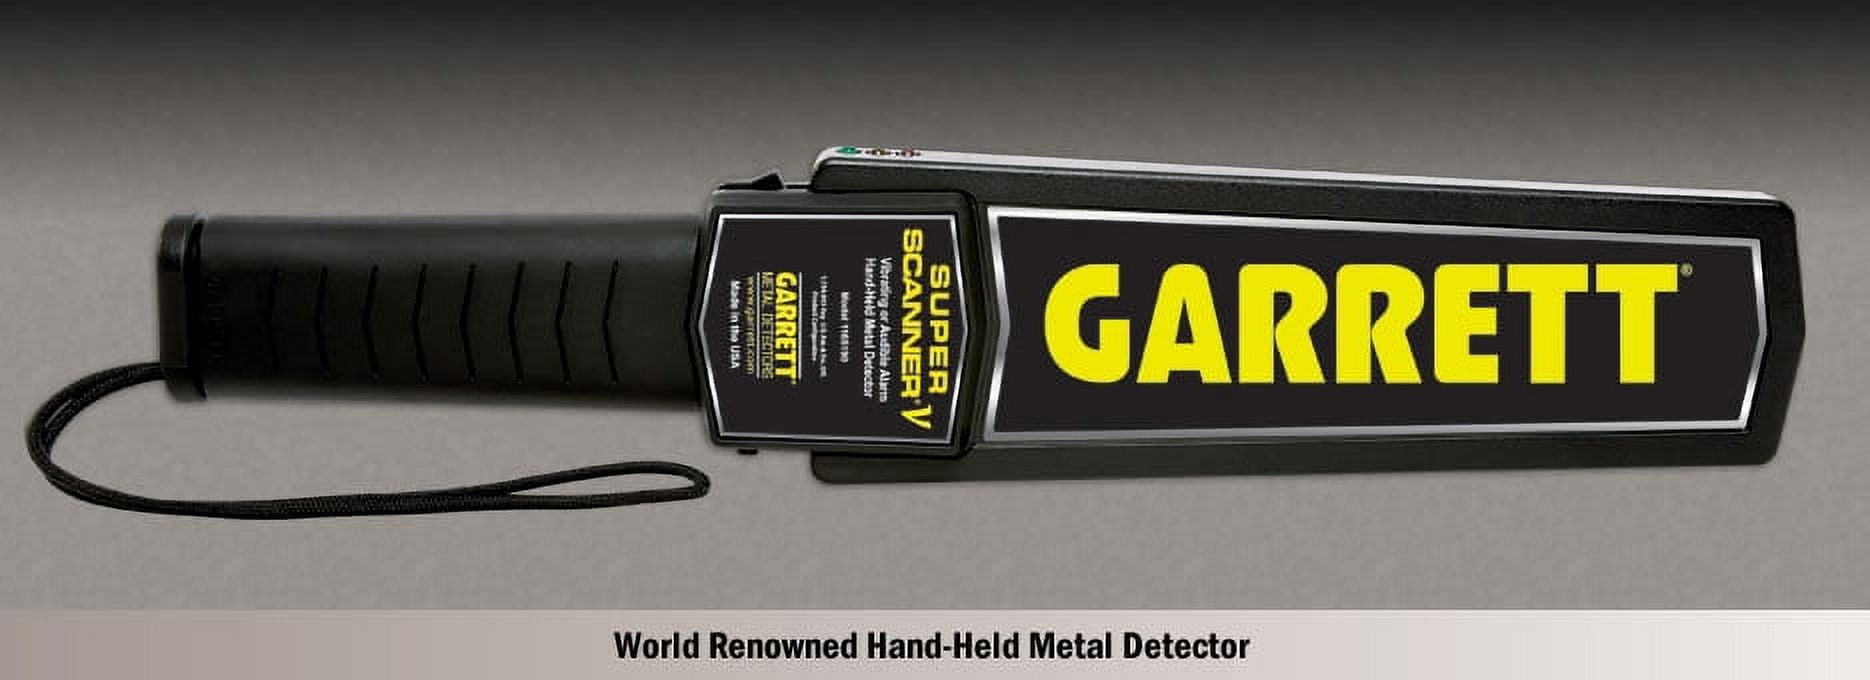 Detector de Metales Garret Super Scanner V